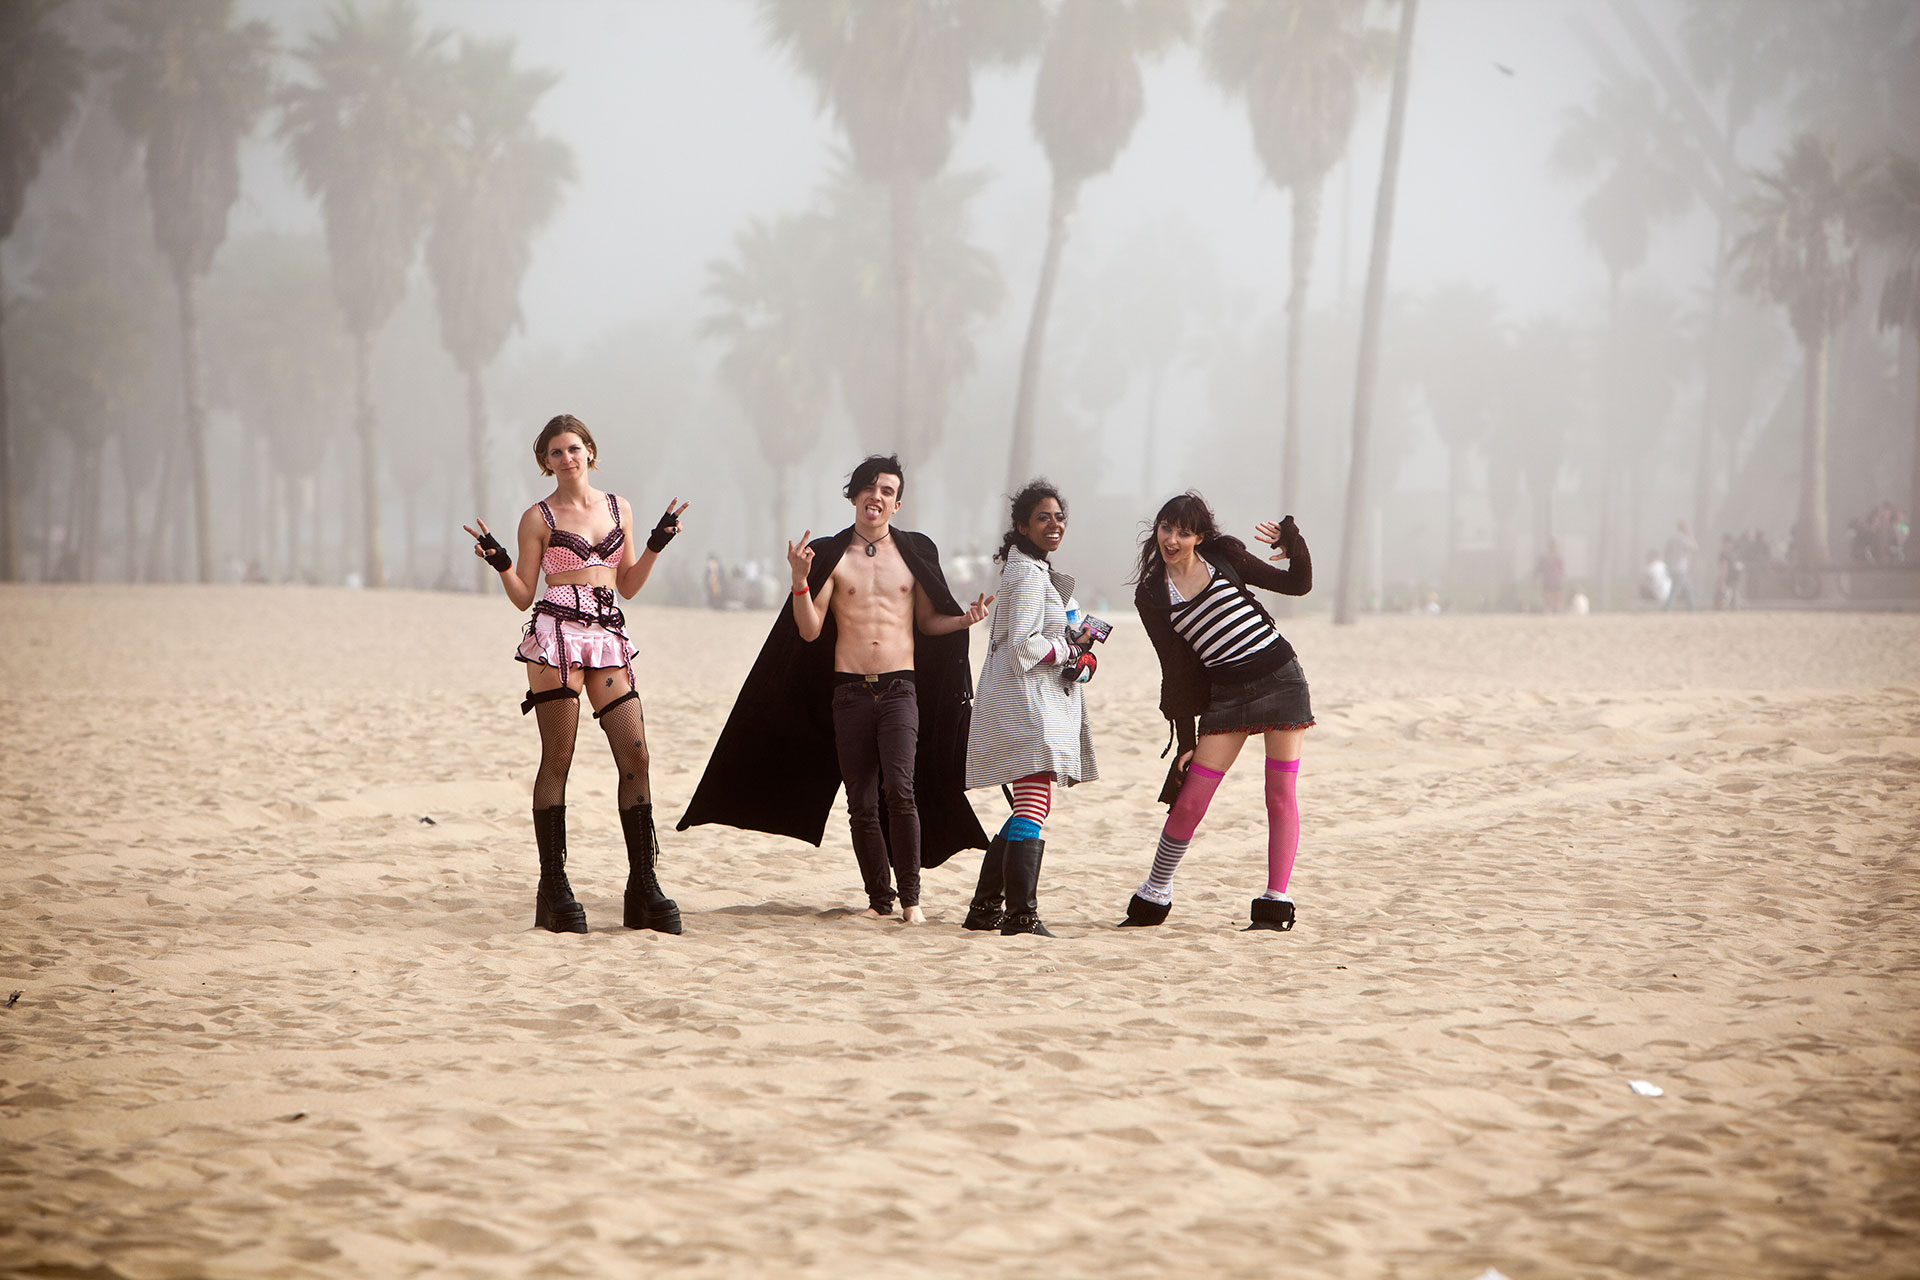 Venice Beach: Friends on a gloomy day. Fellini Style